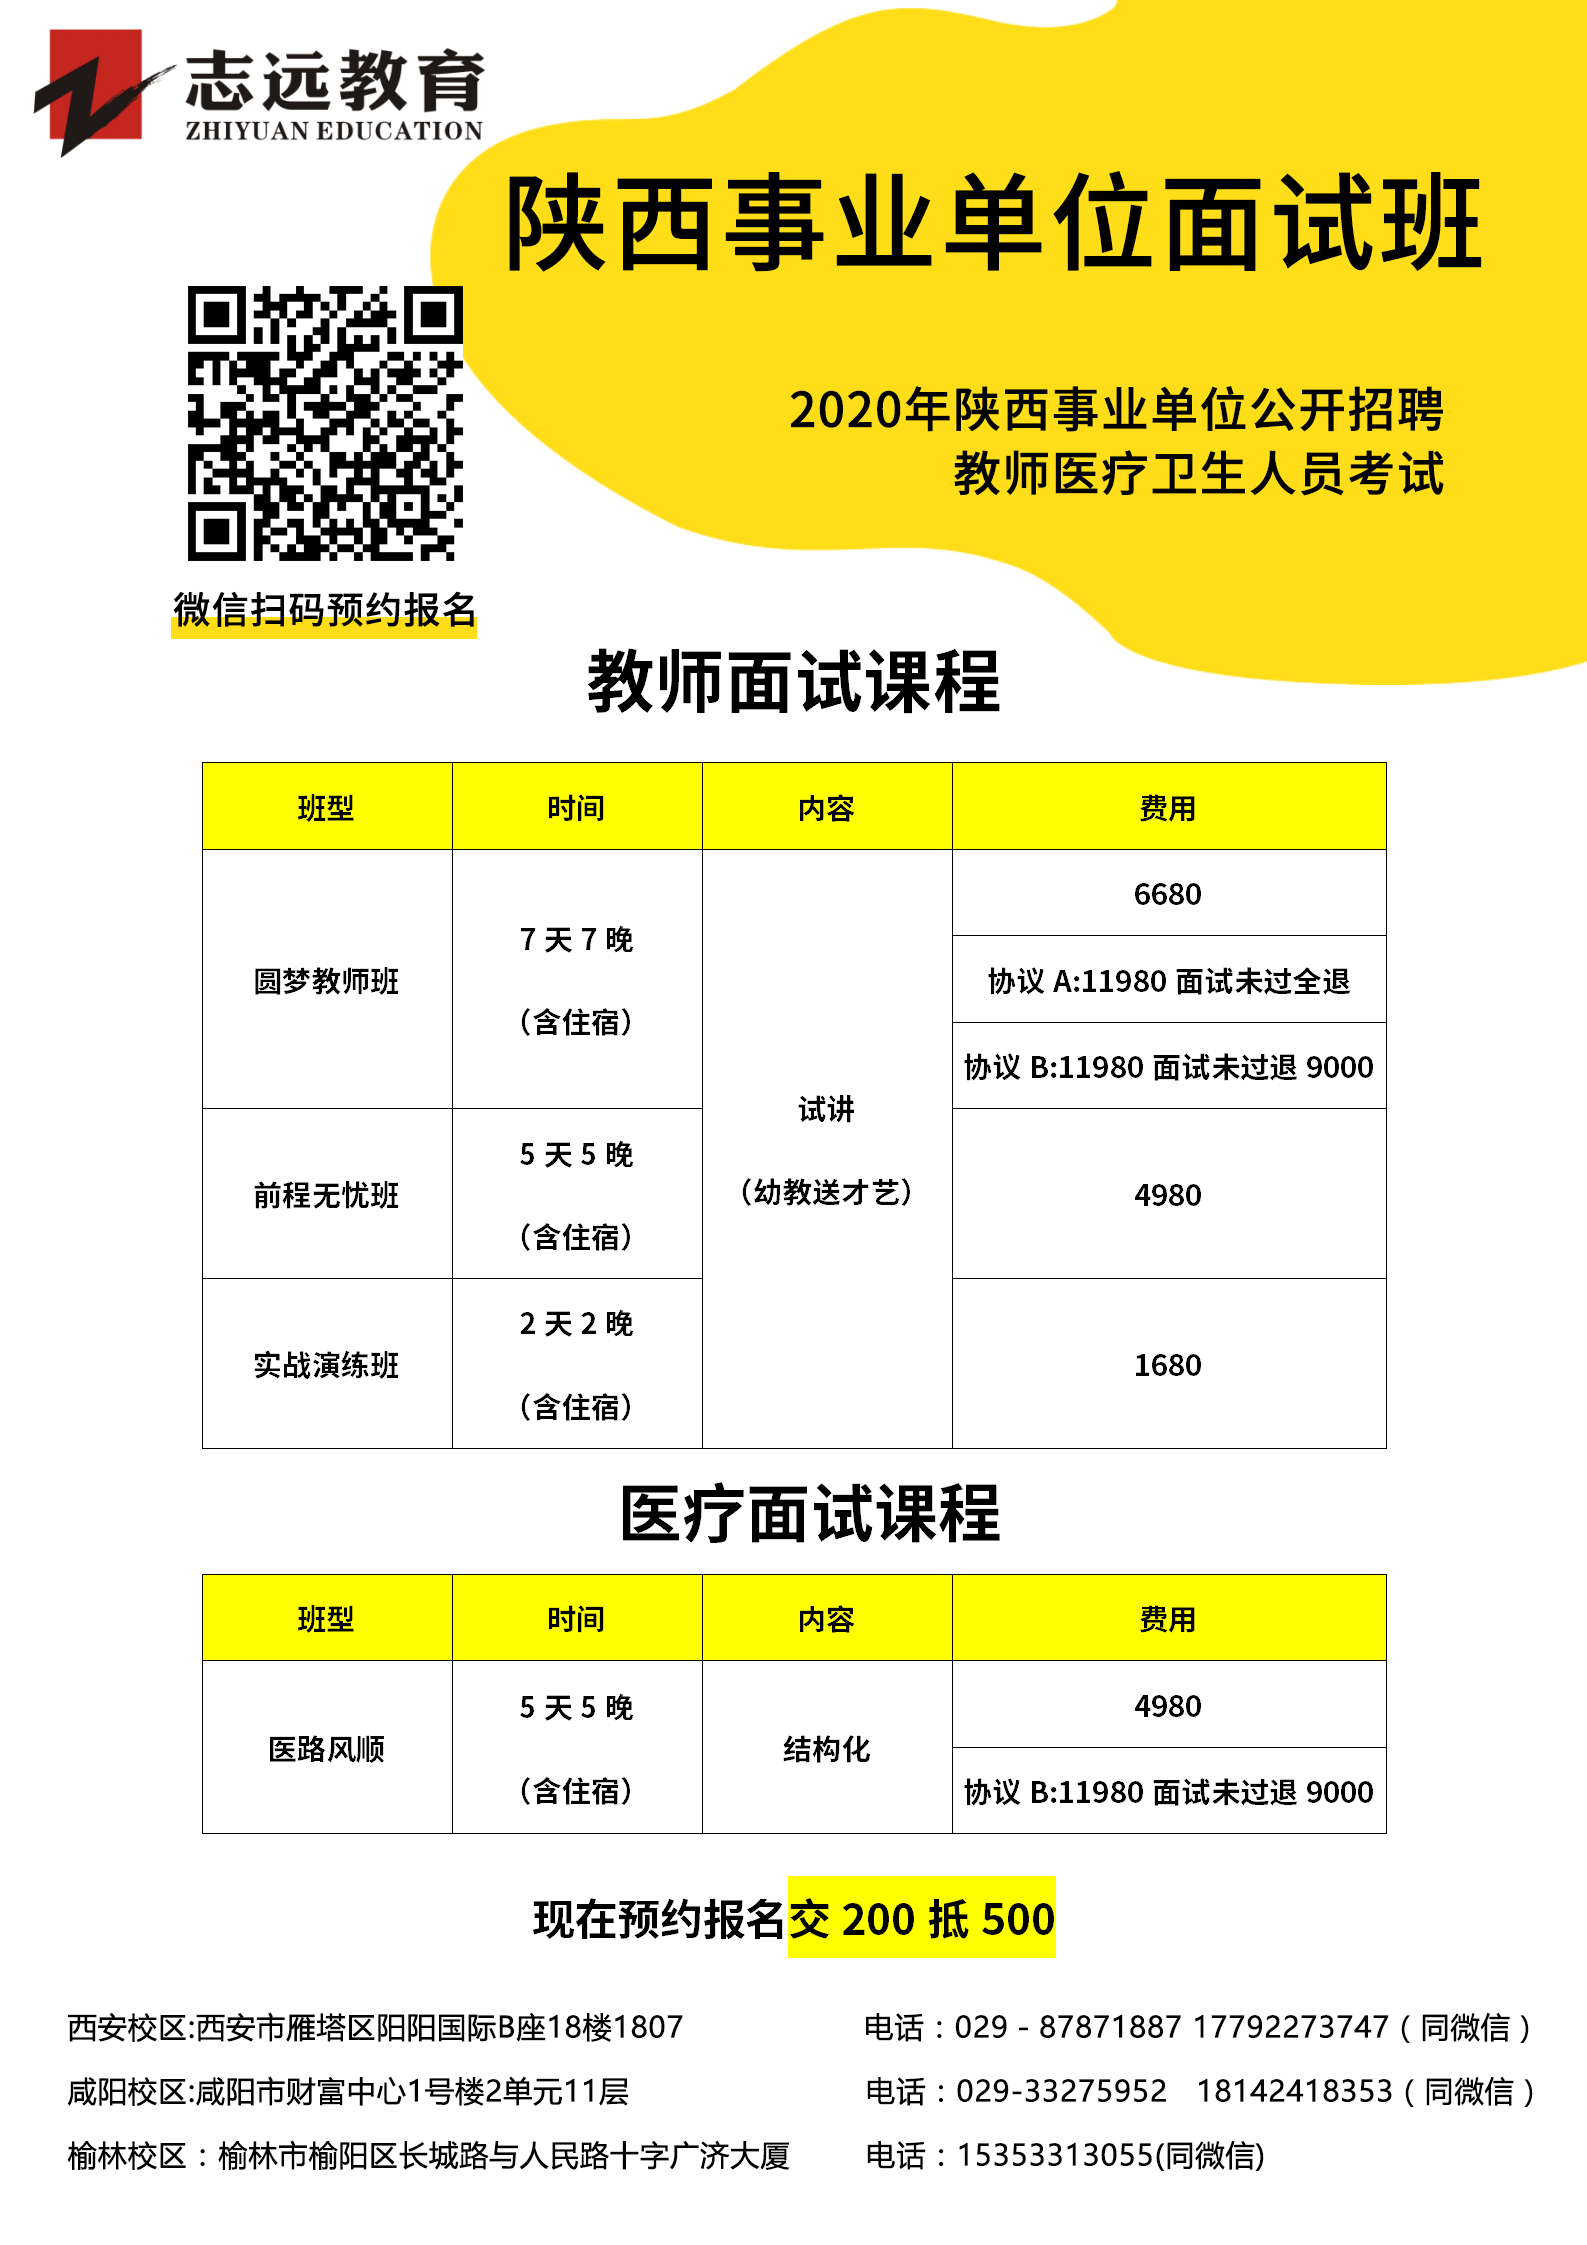 2020年咸阳市事业单位公开招聘教师医疗卫生人员笔试成绩查询和面试资格复审 工作安排公告(图1)